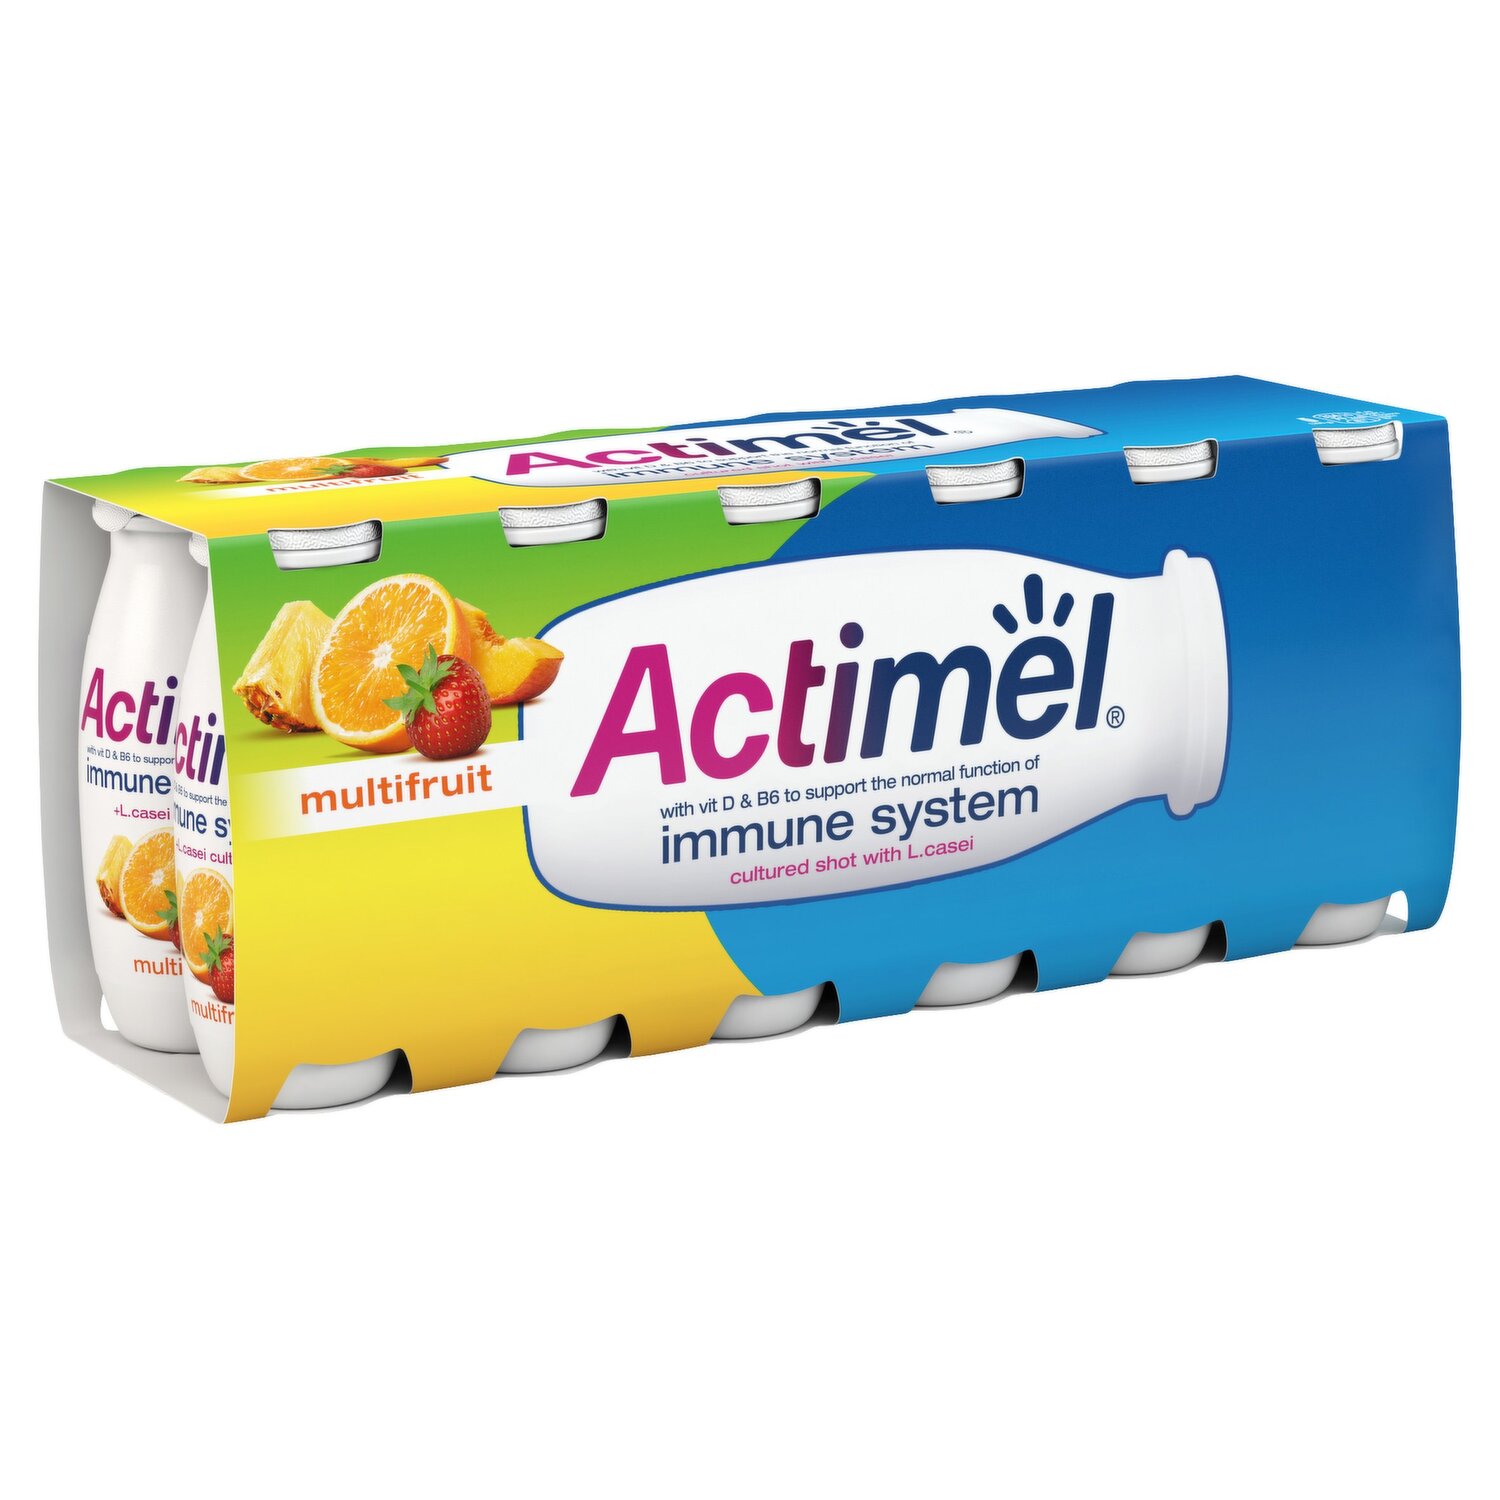 Actimel Multifruit 4-Pack PNG Images & PSDs for Download